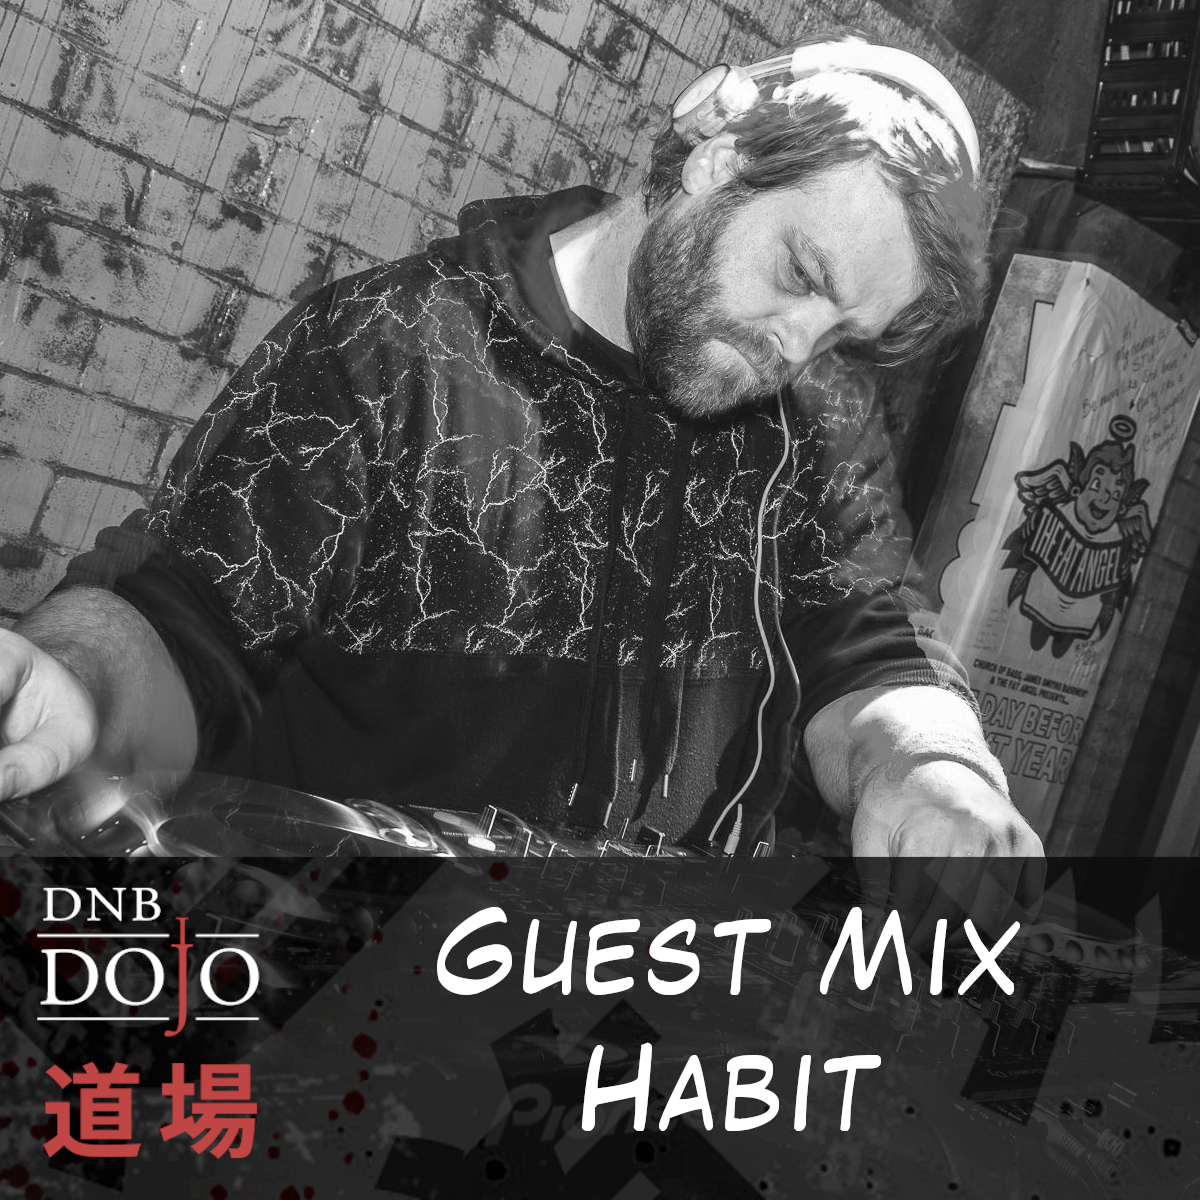 Guest Mix: Habit